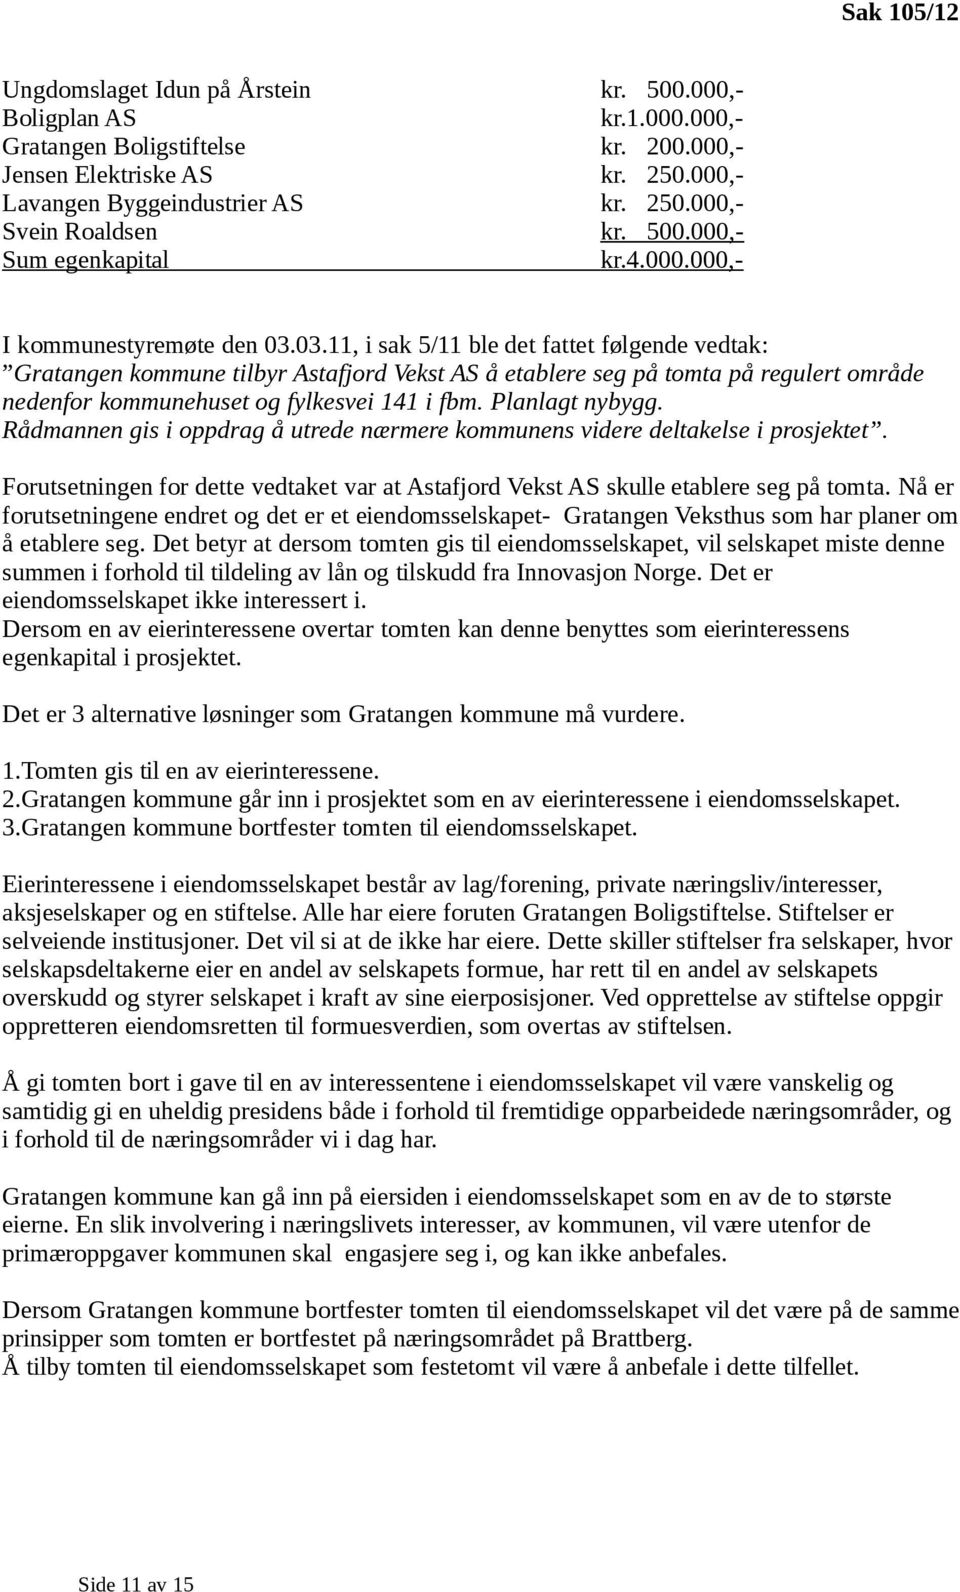 03.11, i sak 5/11 ble det fattet følgende vedtak: Gratangen kommune tilbyr Astafjord Vekst AS å etablere seg på tomta på regulert område nedenfor kommunehuset og fylkesvei 141 i fbm. Planlagt nybygg.